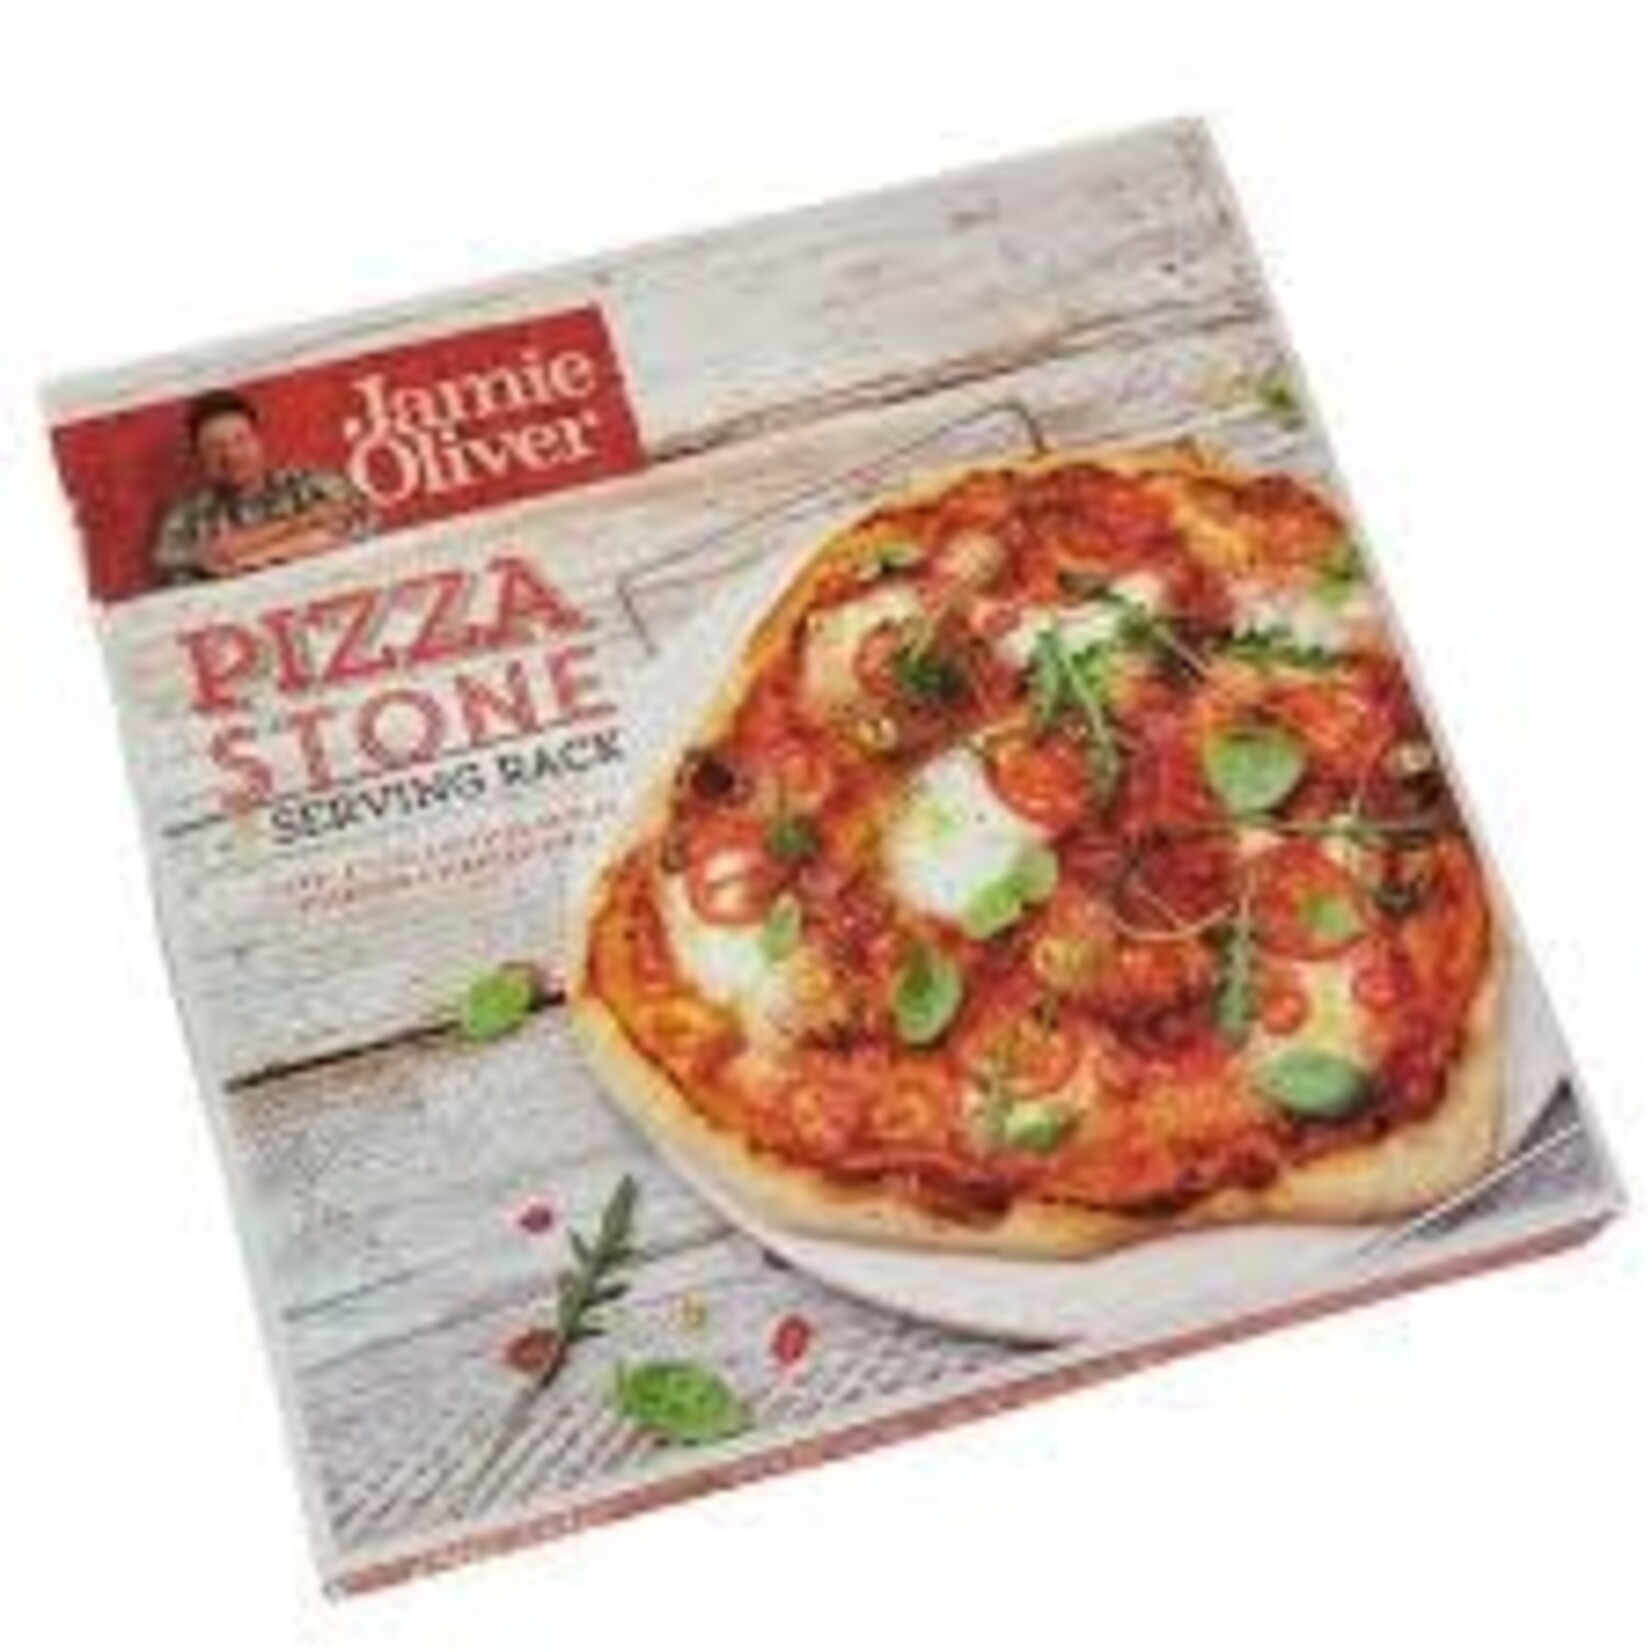 Diverse Merken 33 cm Pizza steen Jamie Oliver Happy Days jc5122